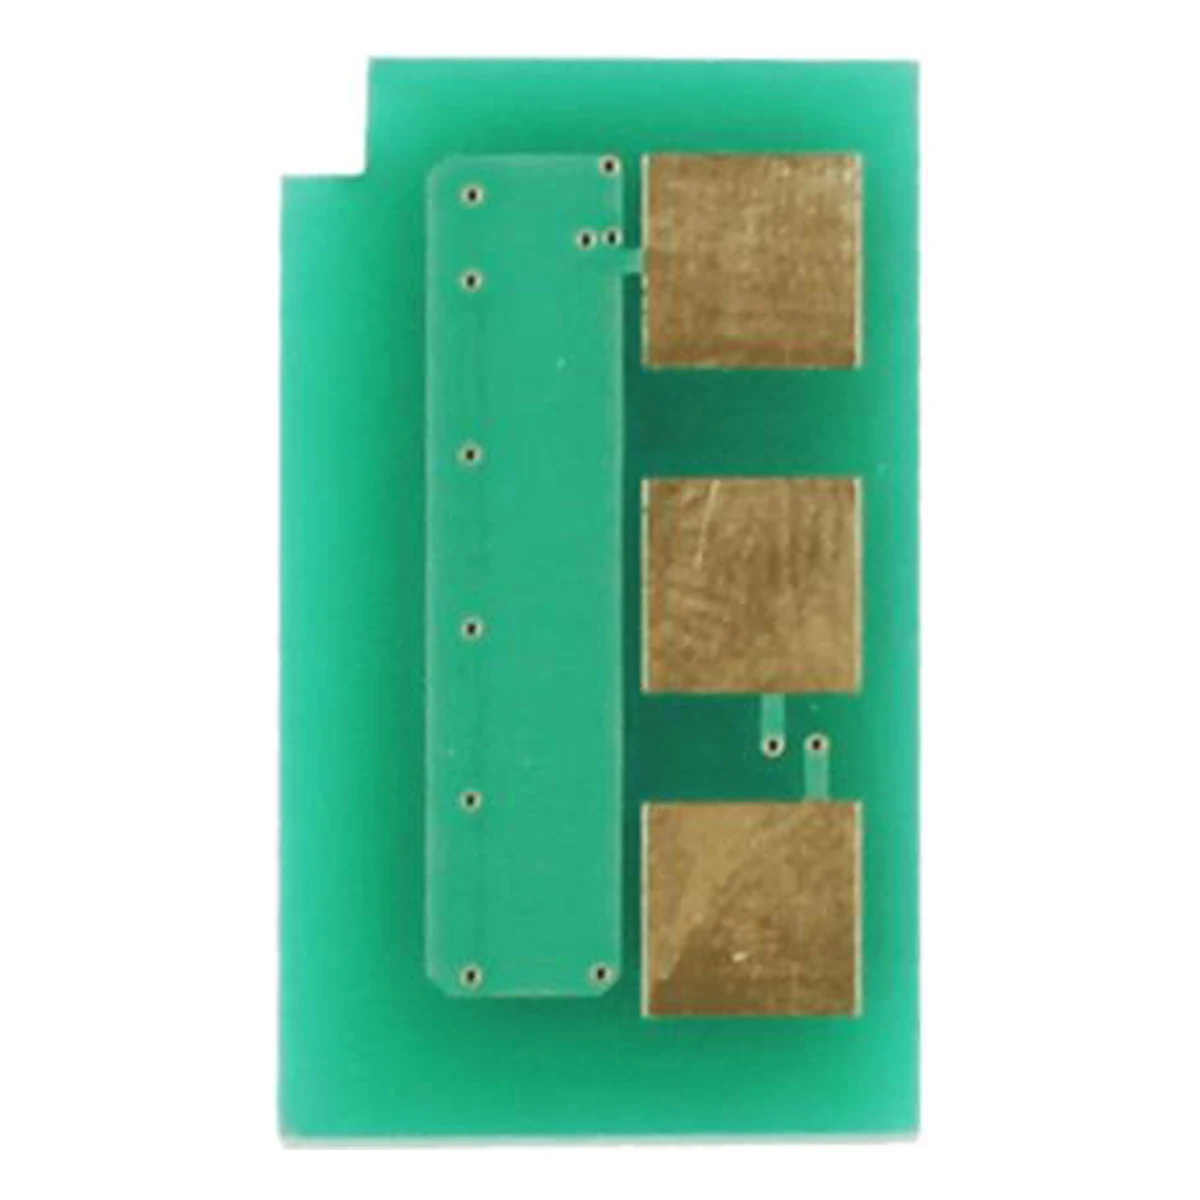 

Toner Chip for Konica Minolta bizhub 25e 28e 25 28 e 25-e 28-e bizhub-25e bizhub-28e bizhub-25/28 TN219 TN-219 TN 219 DD1A002G3